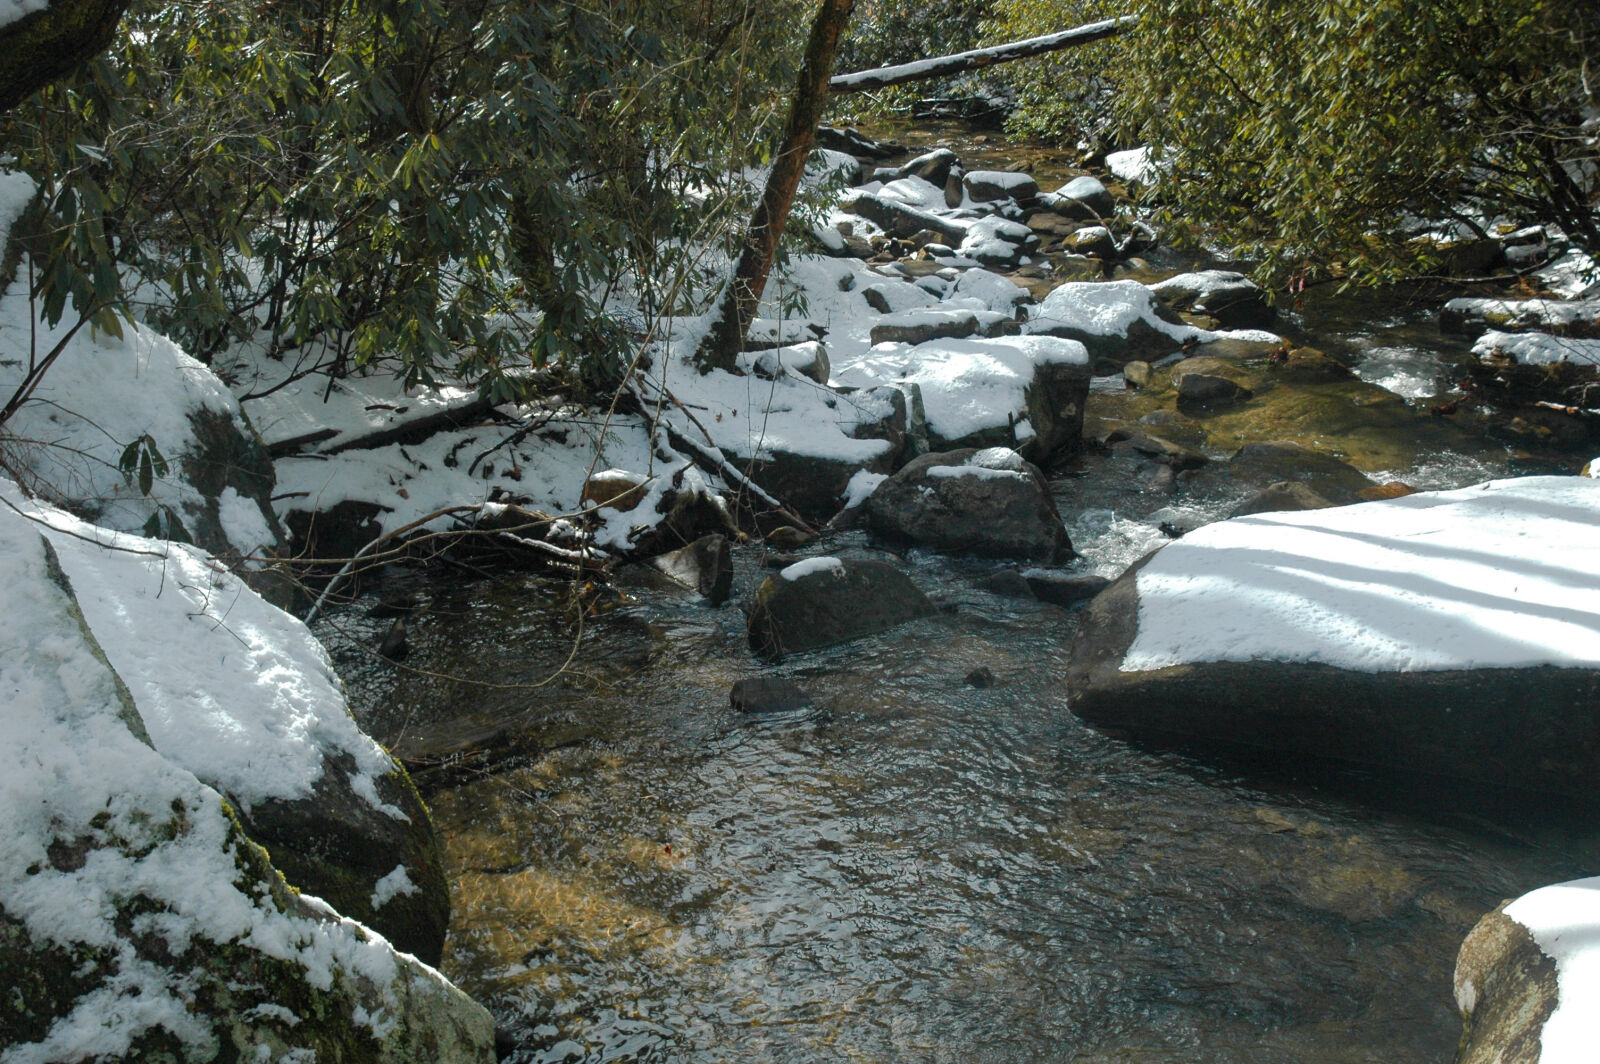 Nikon AF-S DX Nikkor 18-70mm F3.5-4.5G ED-IF sample photo. River, rocks, snow photography